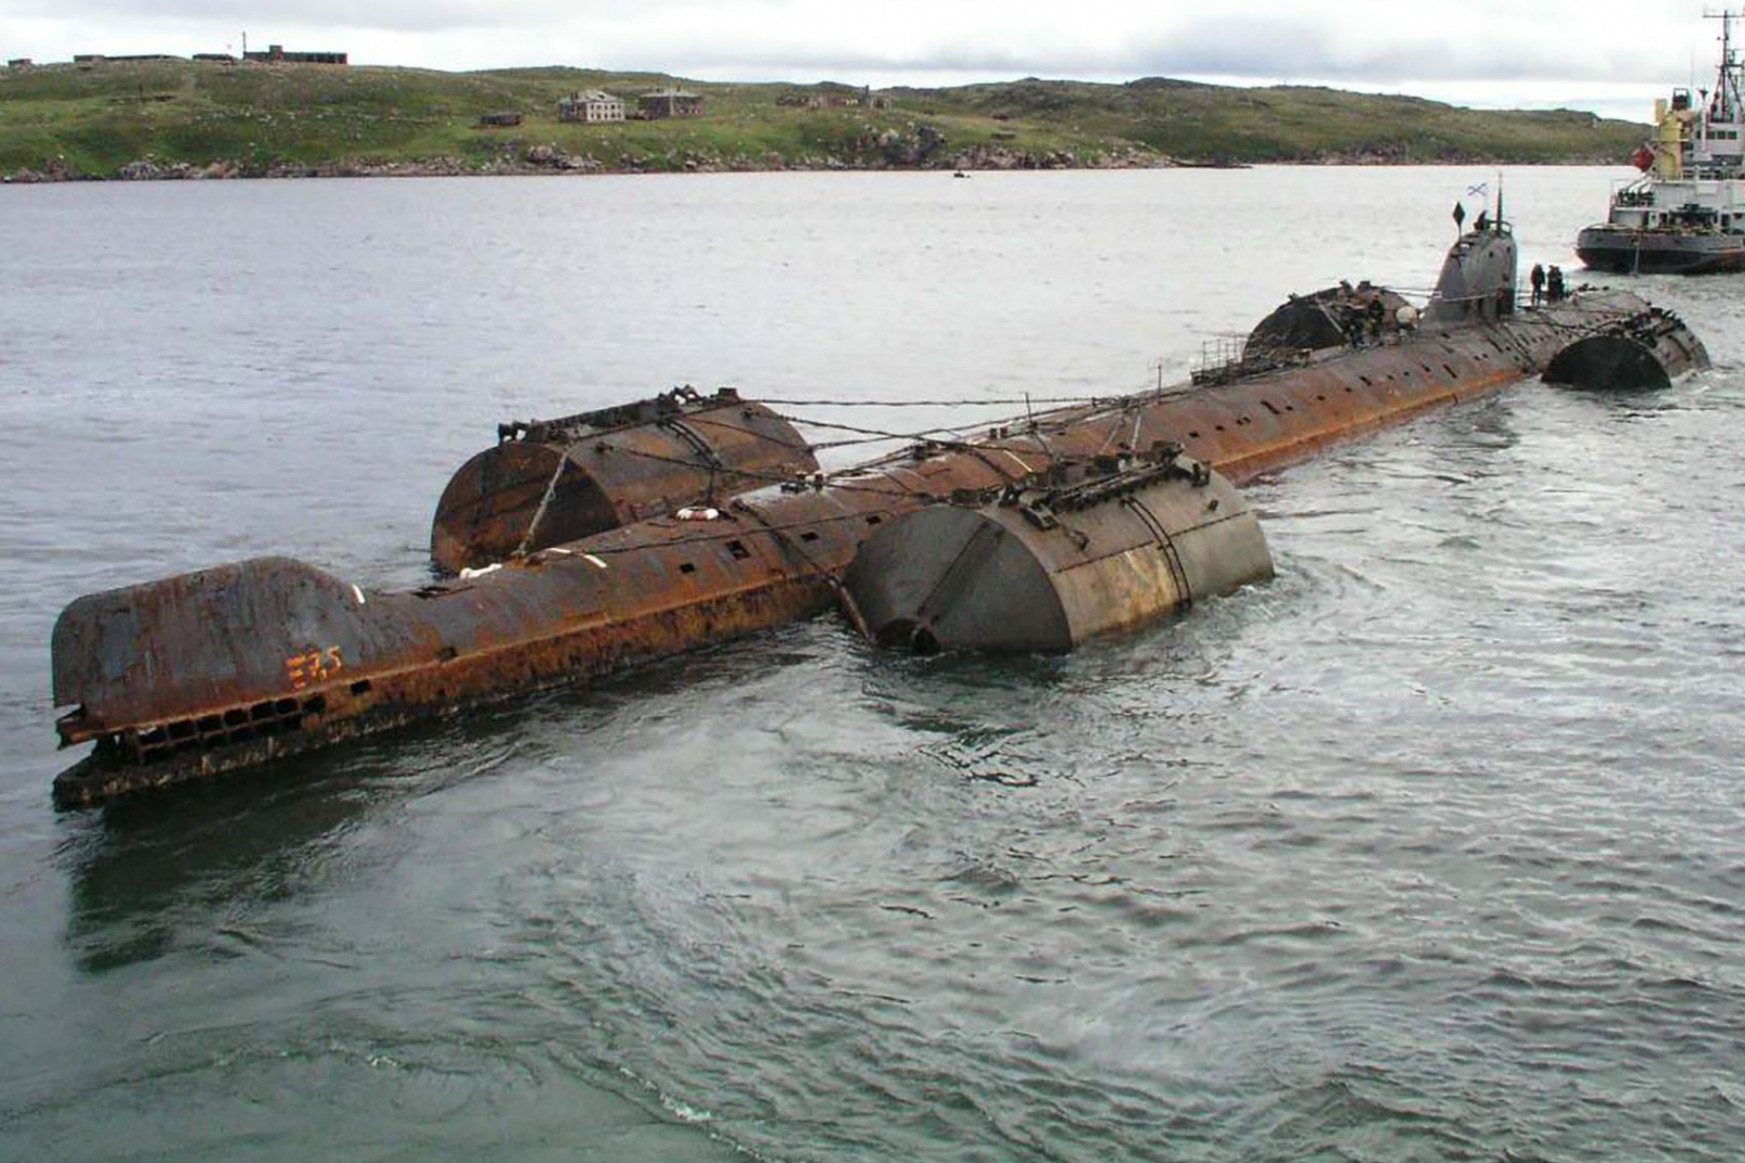 Hat és fél hirosimányi atomhulladék rohad egy orosz tengeralattjáró-temetőben